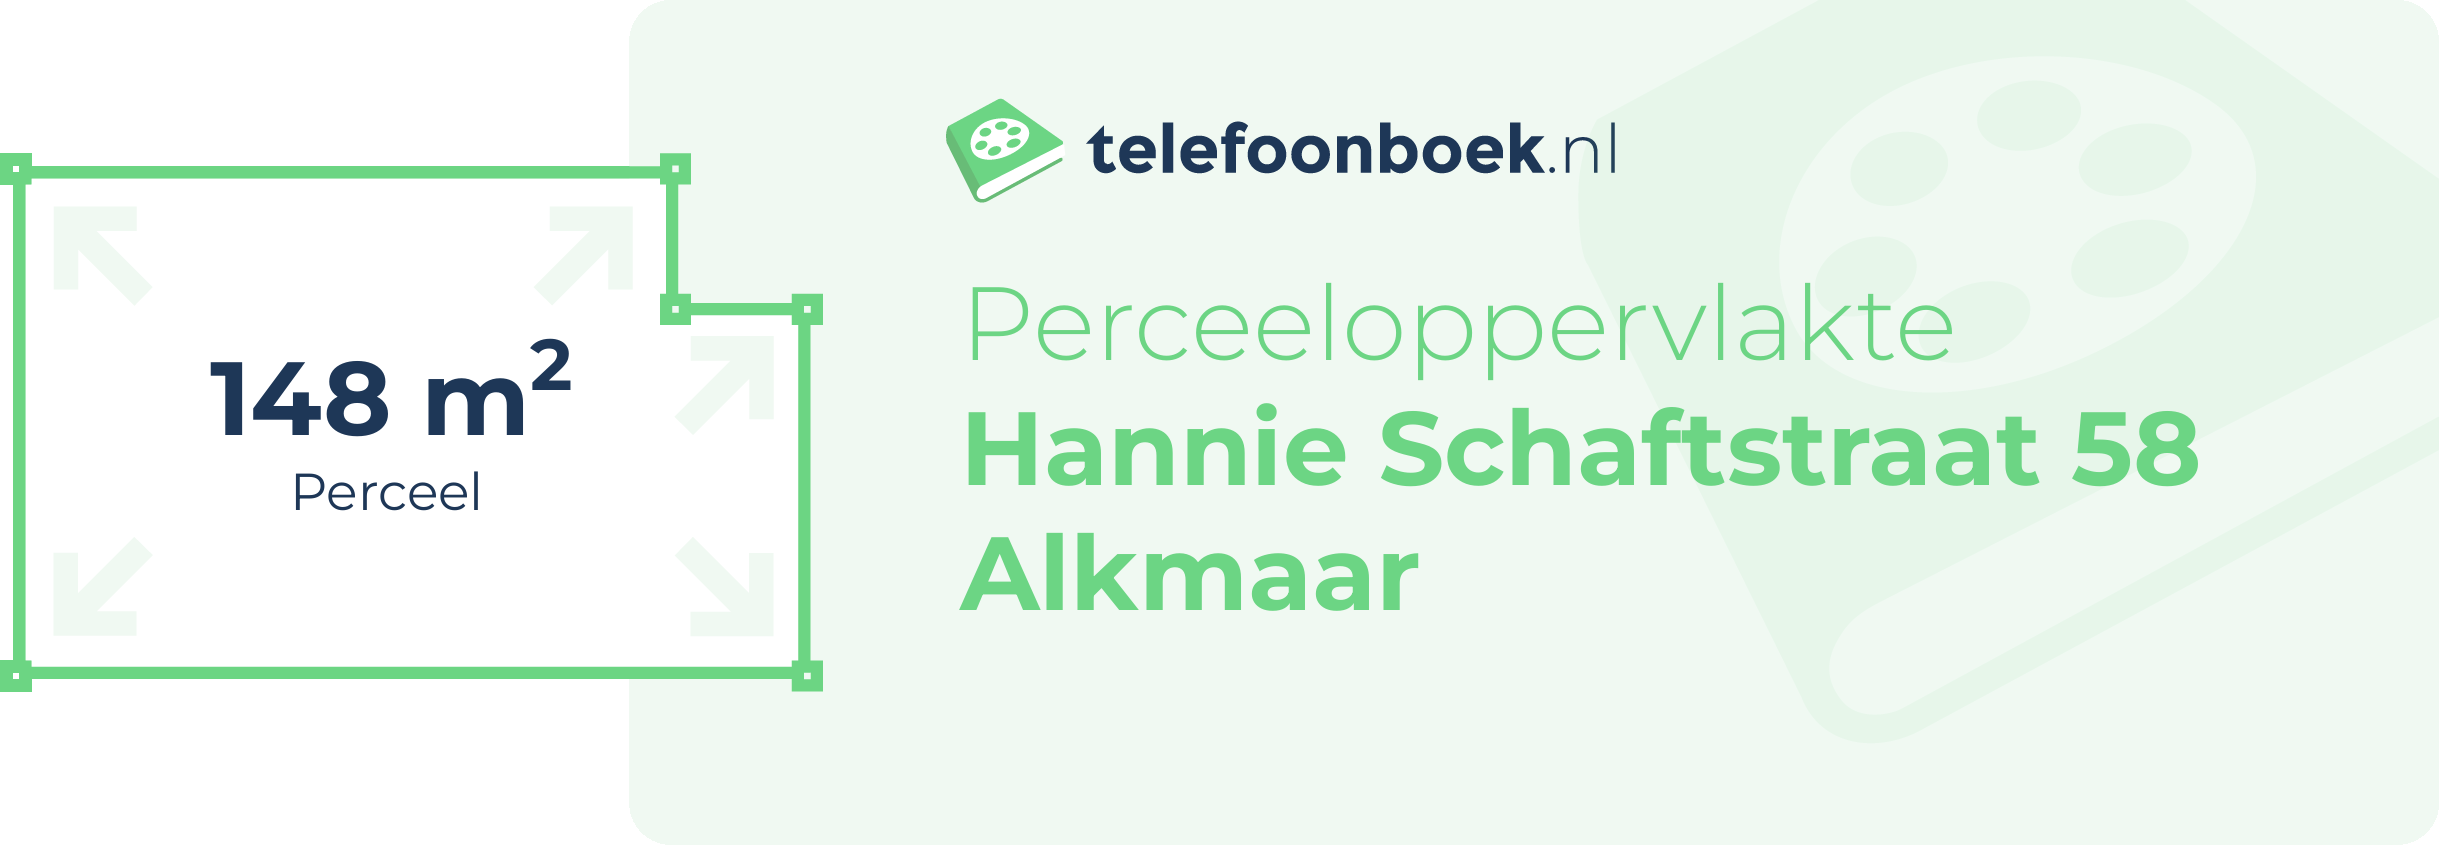 Perceeloppervlakte Hannie Schaftstraat 58 Alkmaar